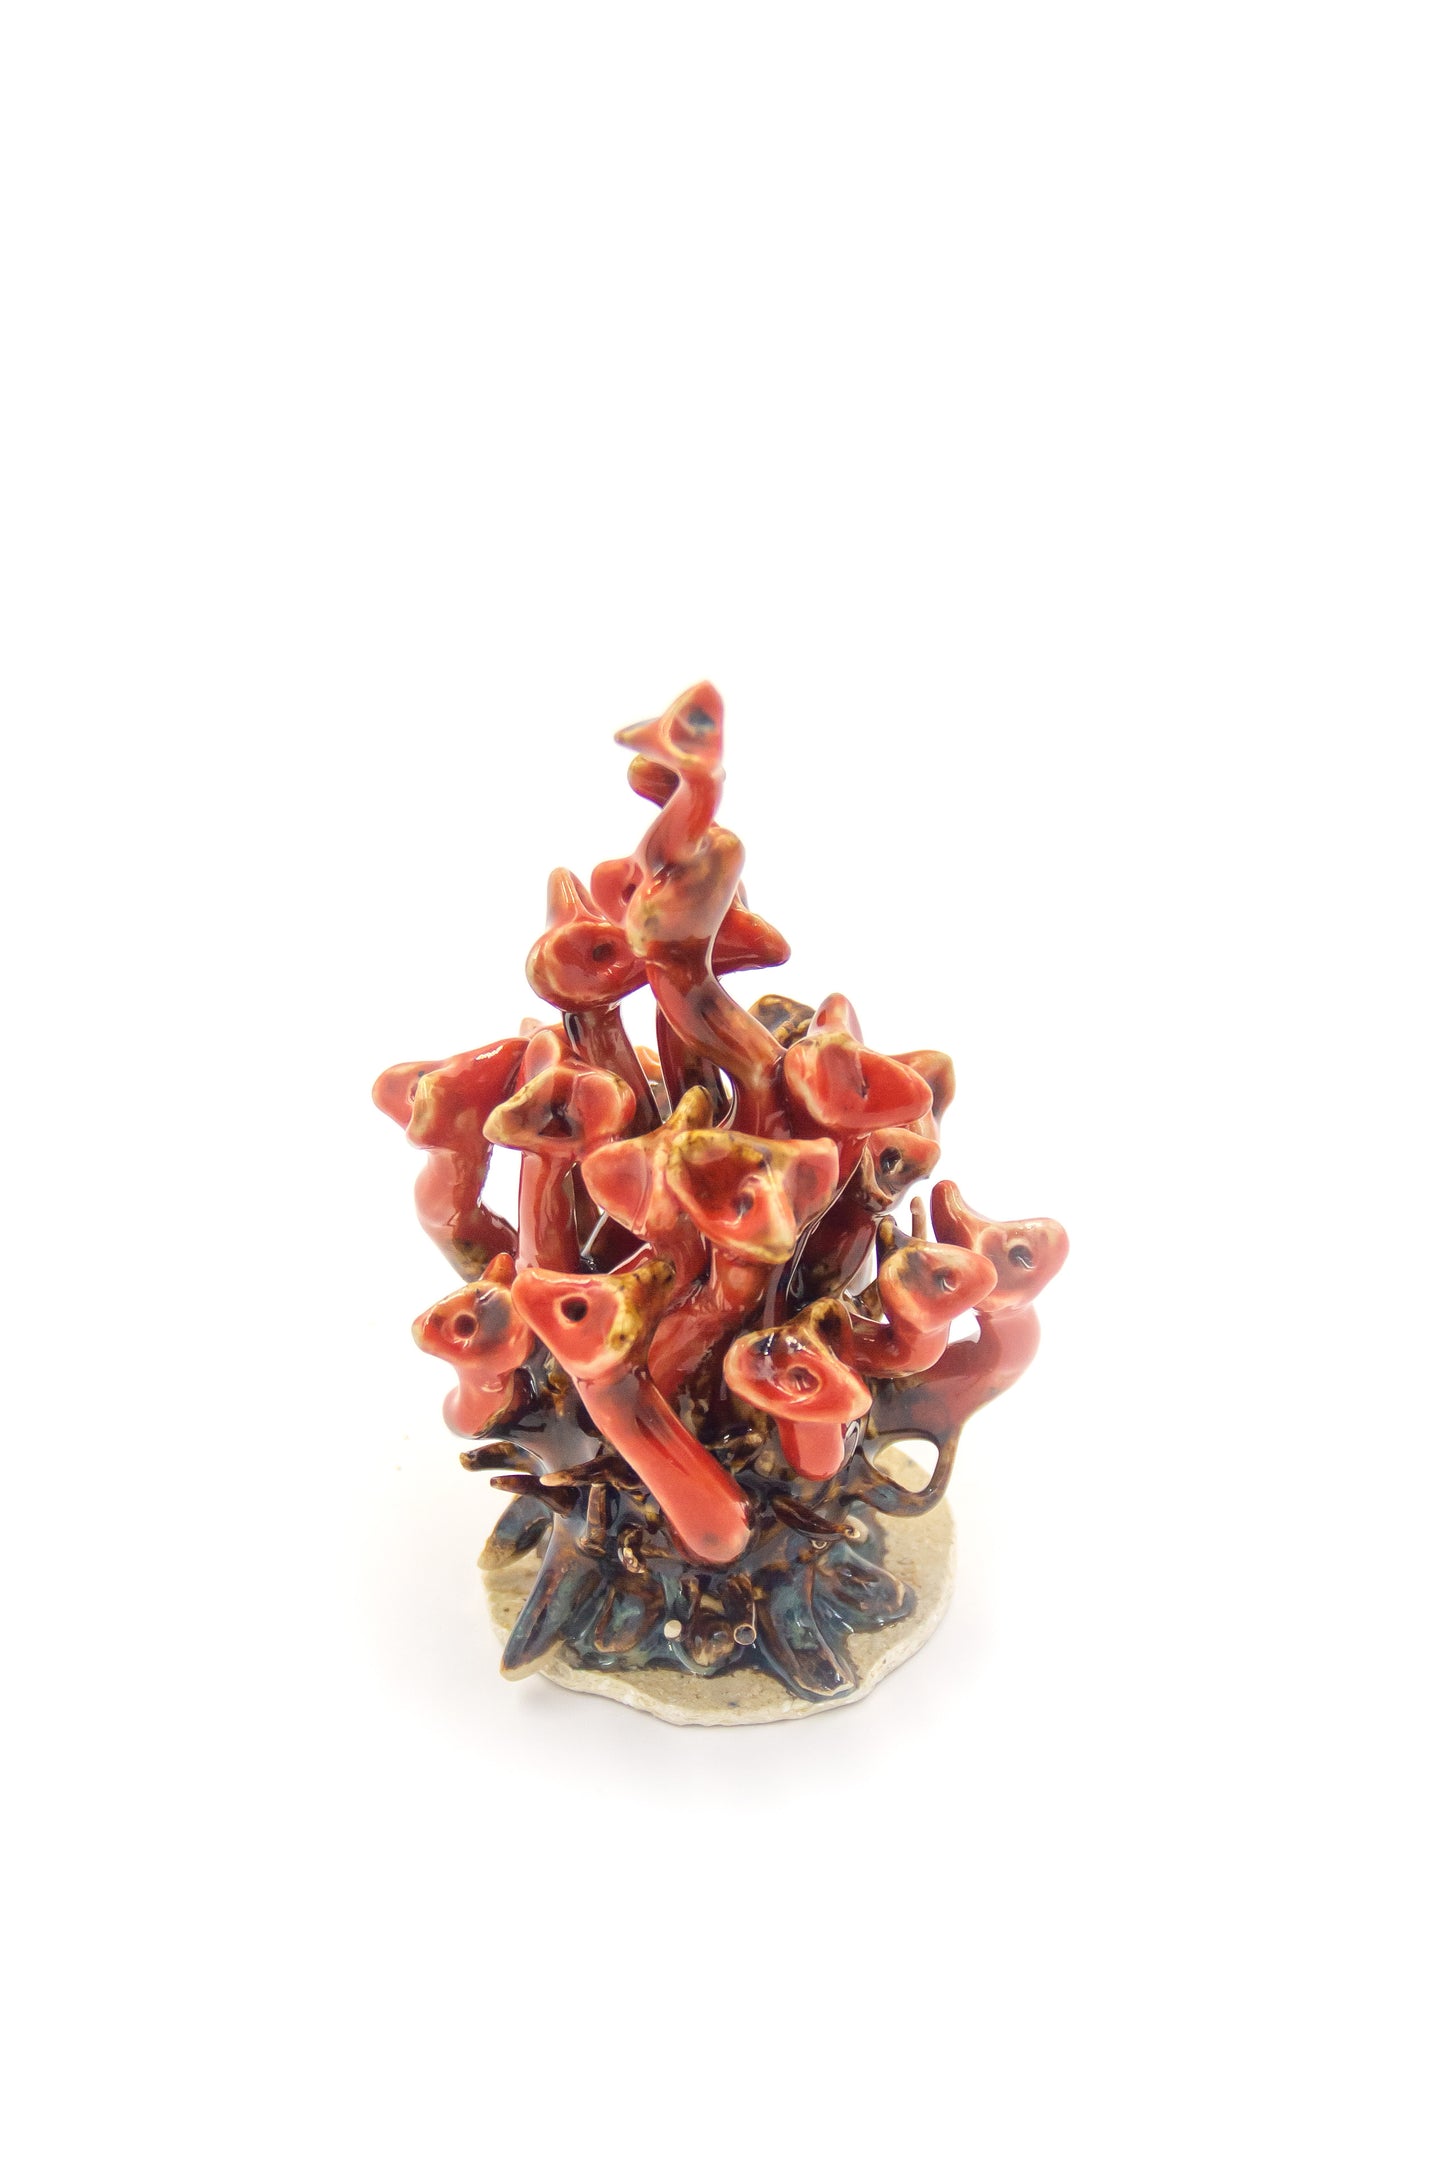 Werling pierworodny ceramiczny w kolorze czerwono-brązowym